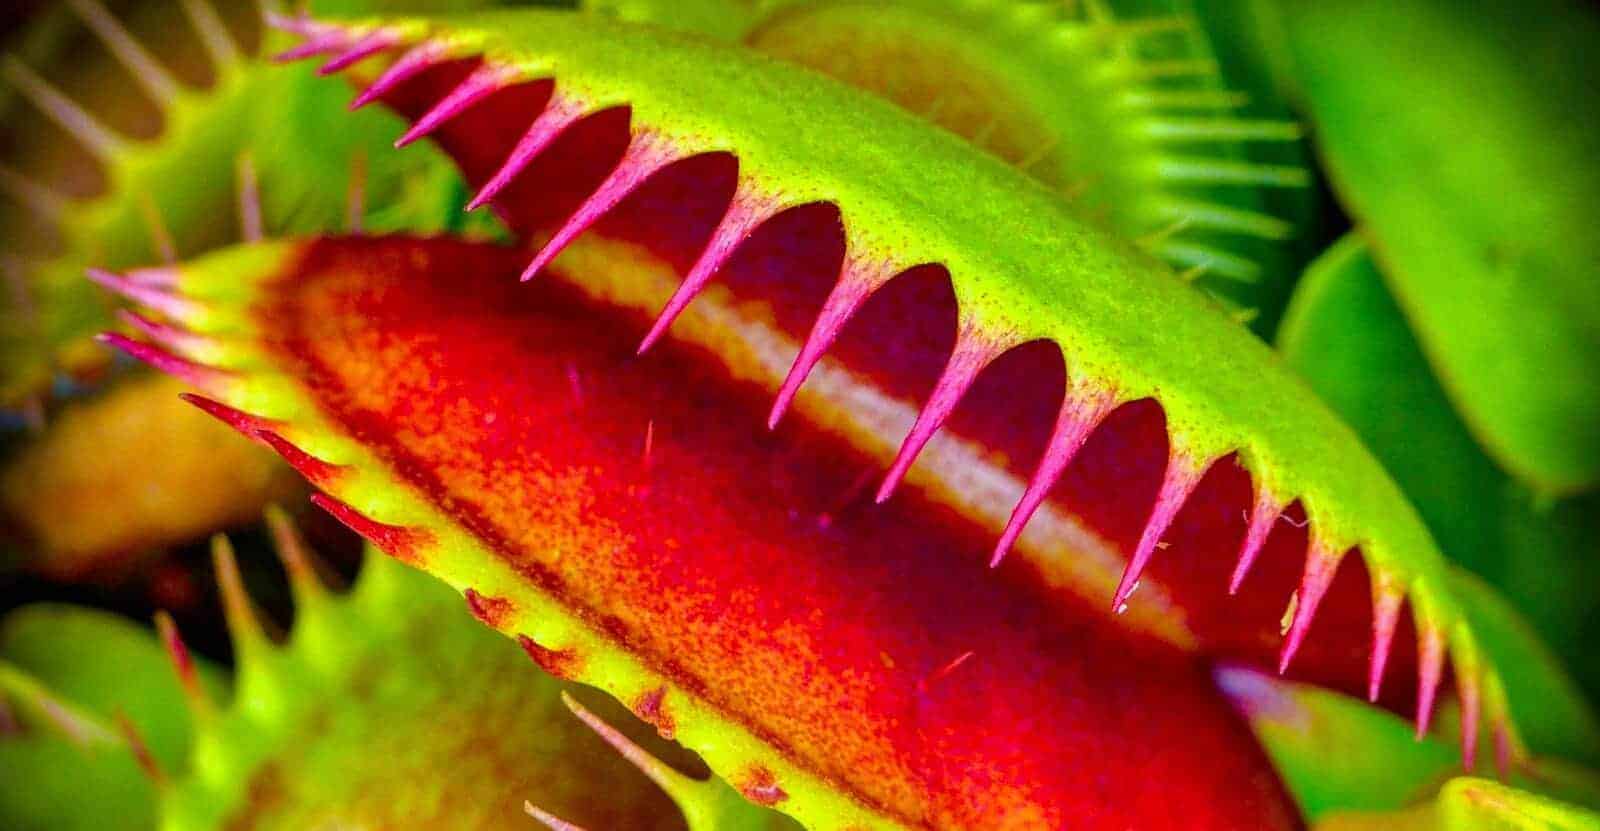 venus flytrap care